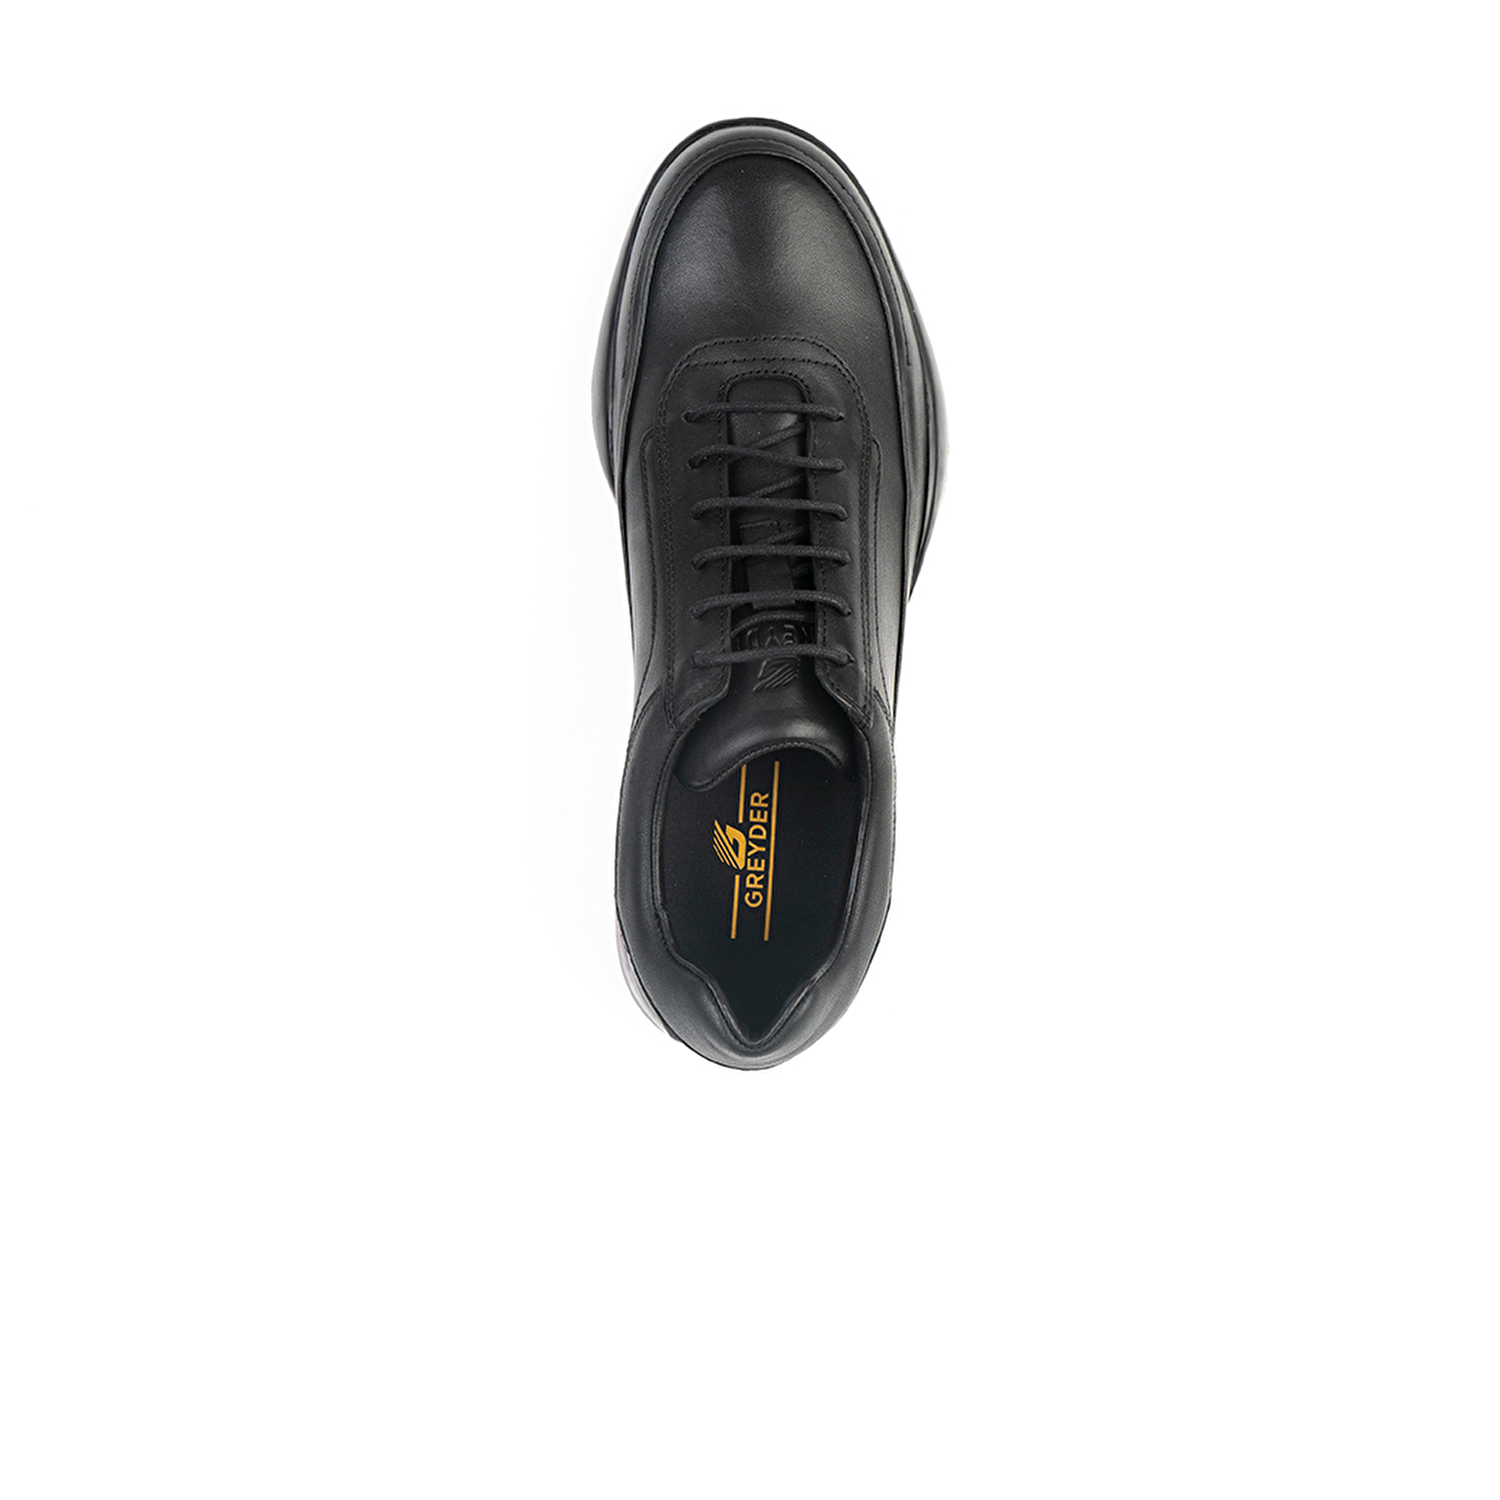 Erkek Ayakkabı Siyah 15121-5